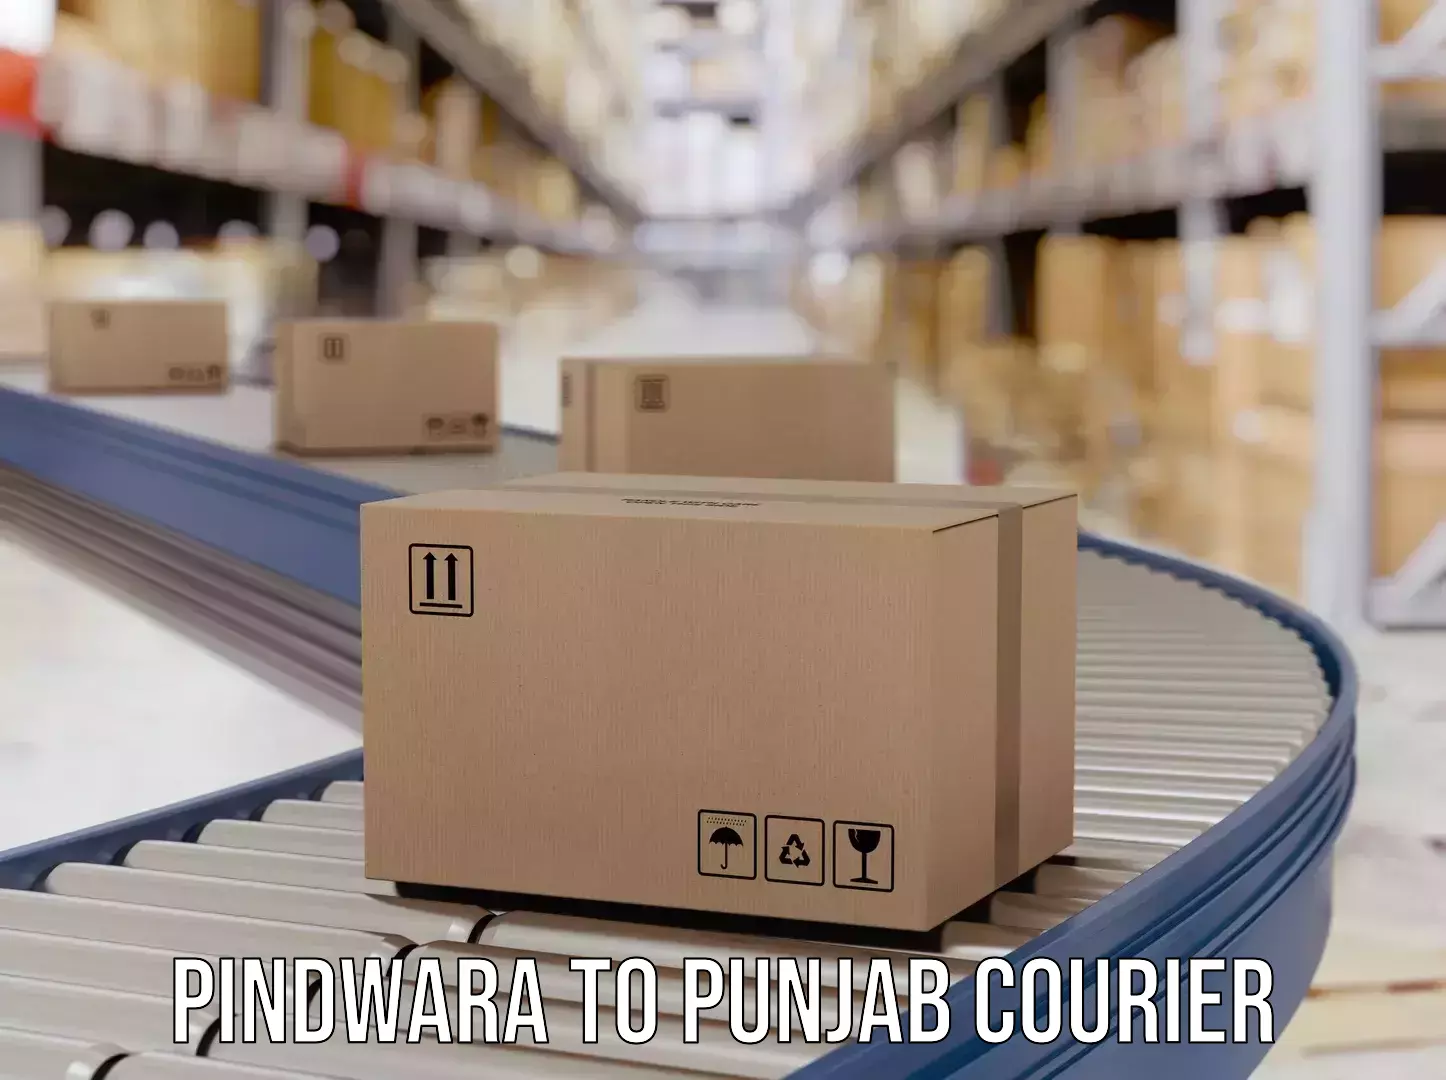 Efficient freight service Pindwara to Punjab